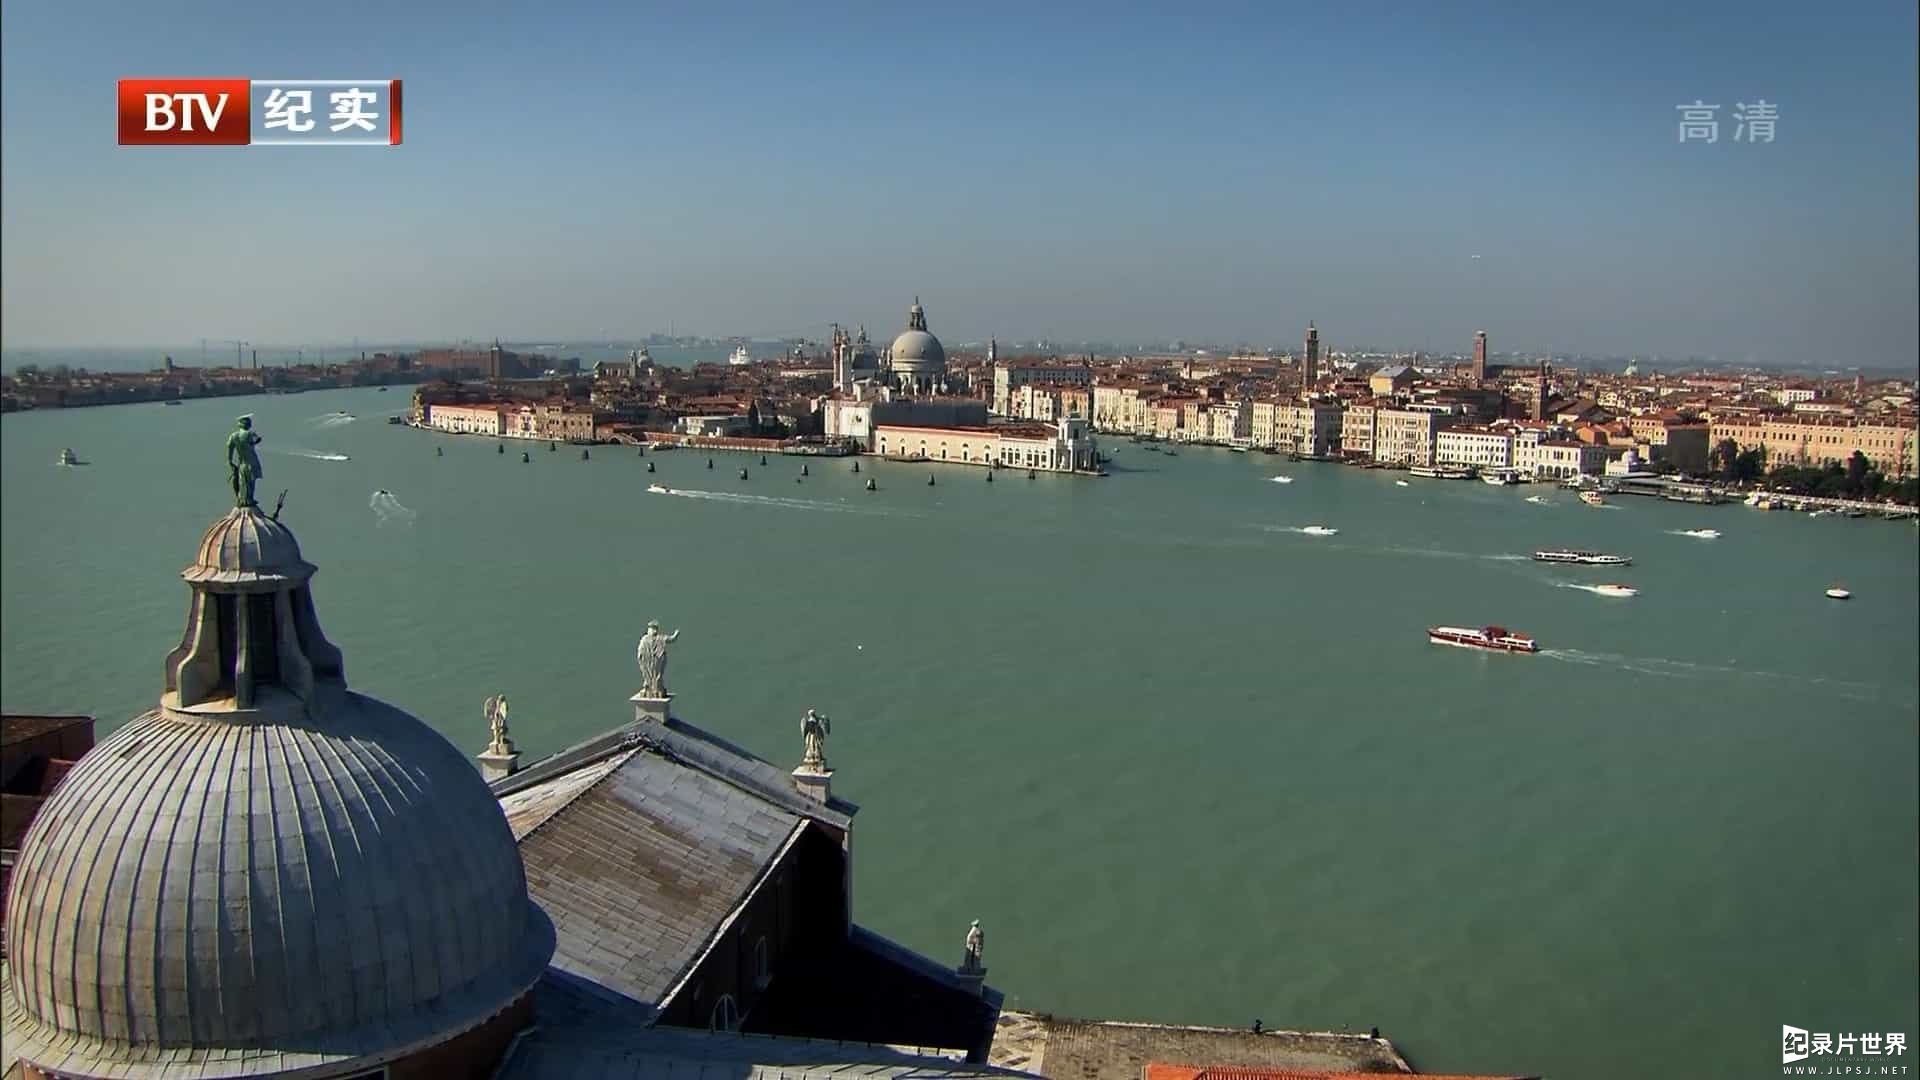 BBC纪录片/ BTV引进版 《威尼斯24小时 Venice 24/7 2015》全6集